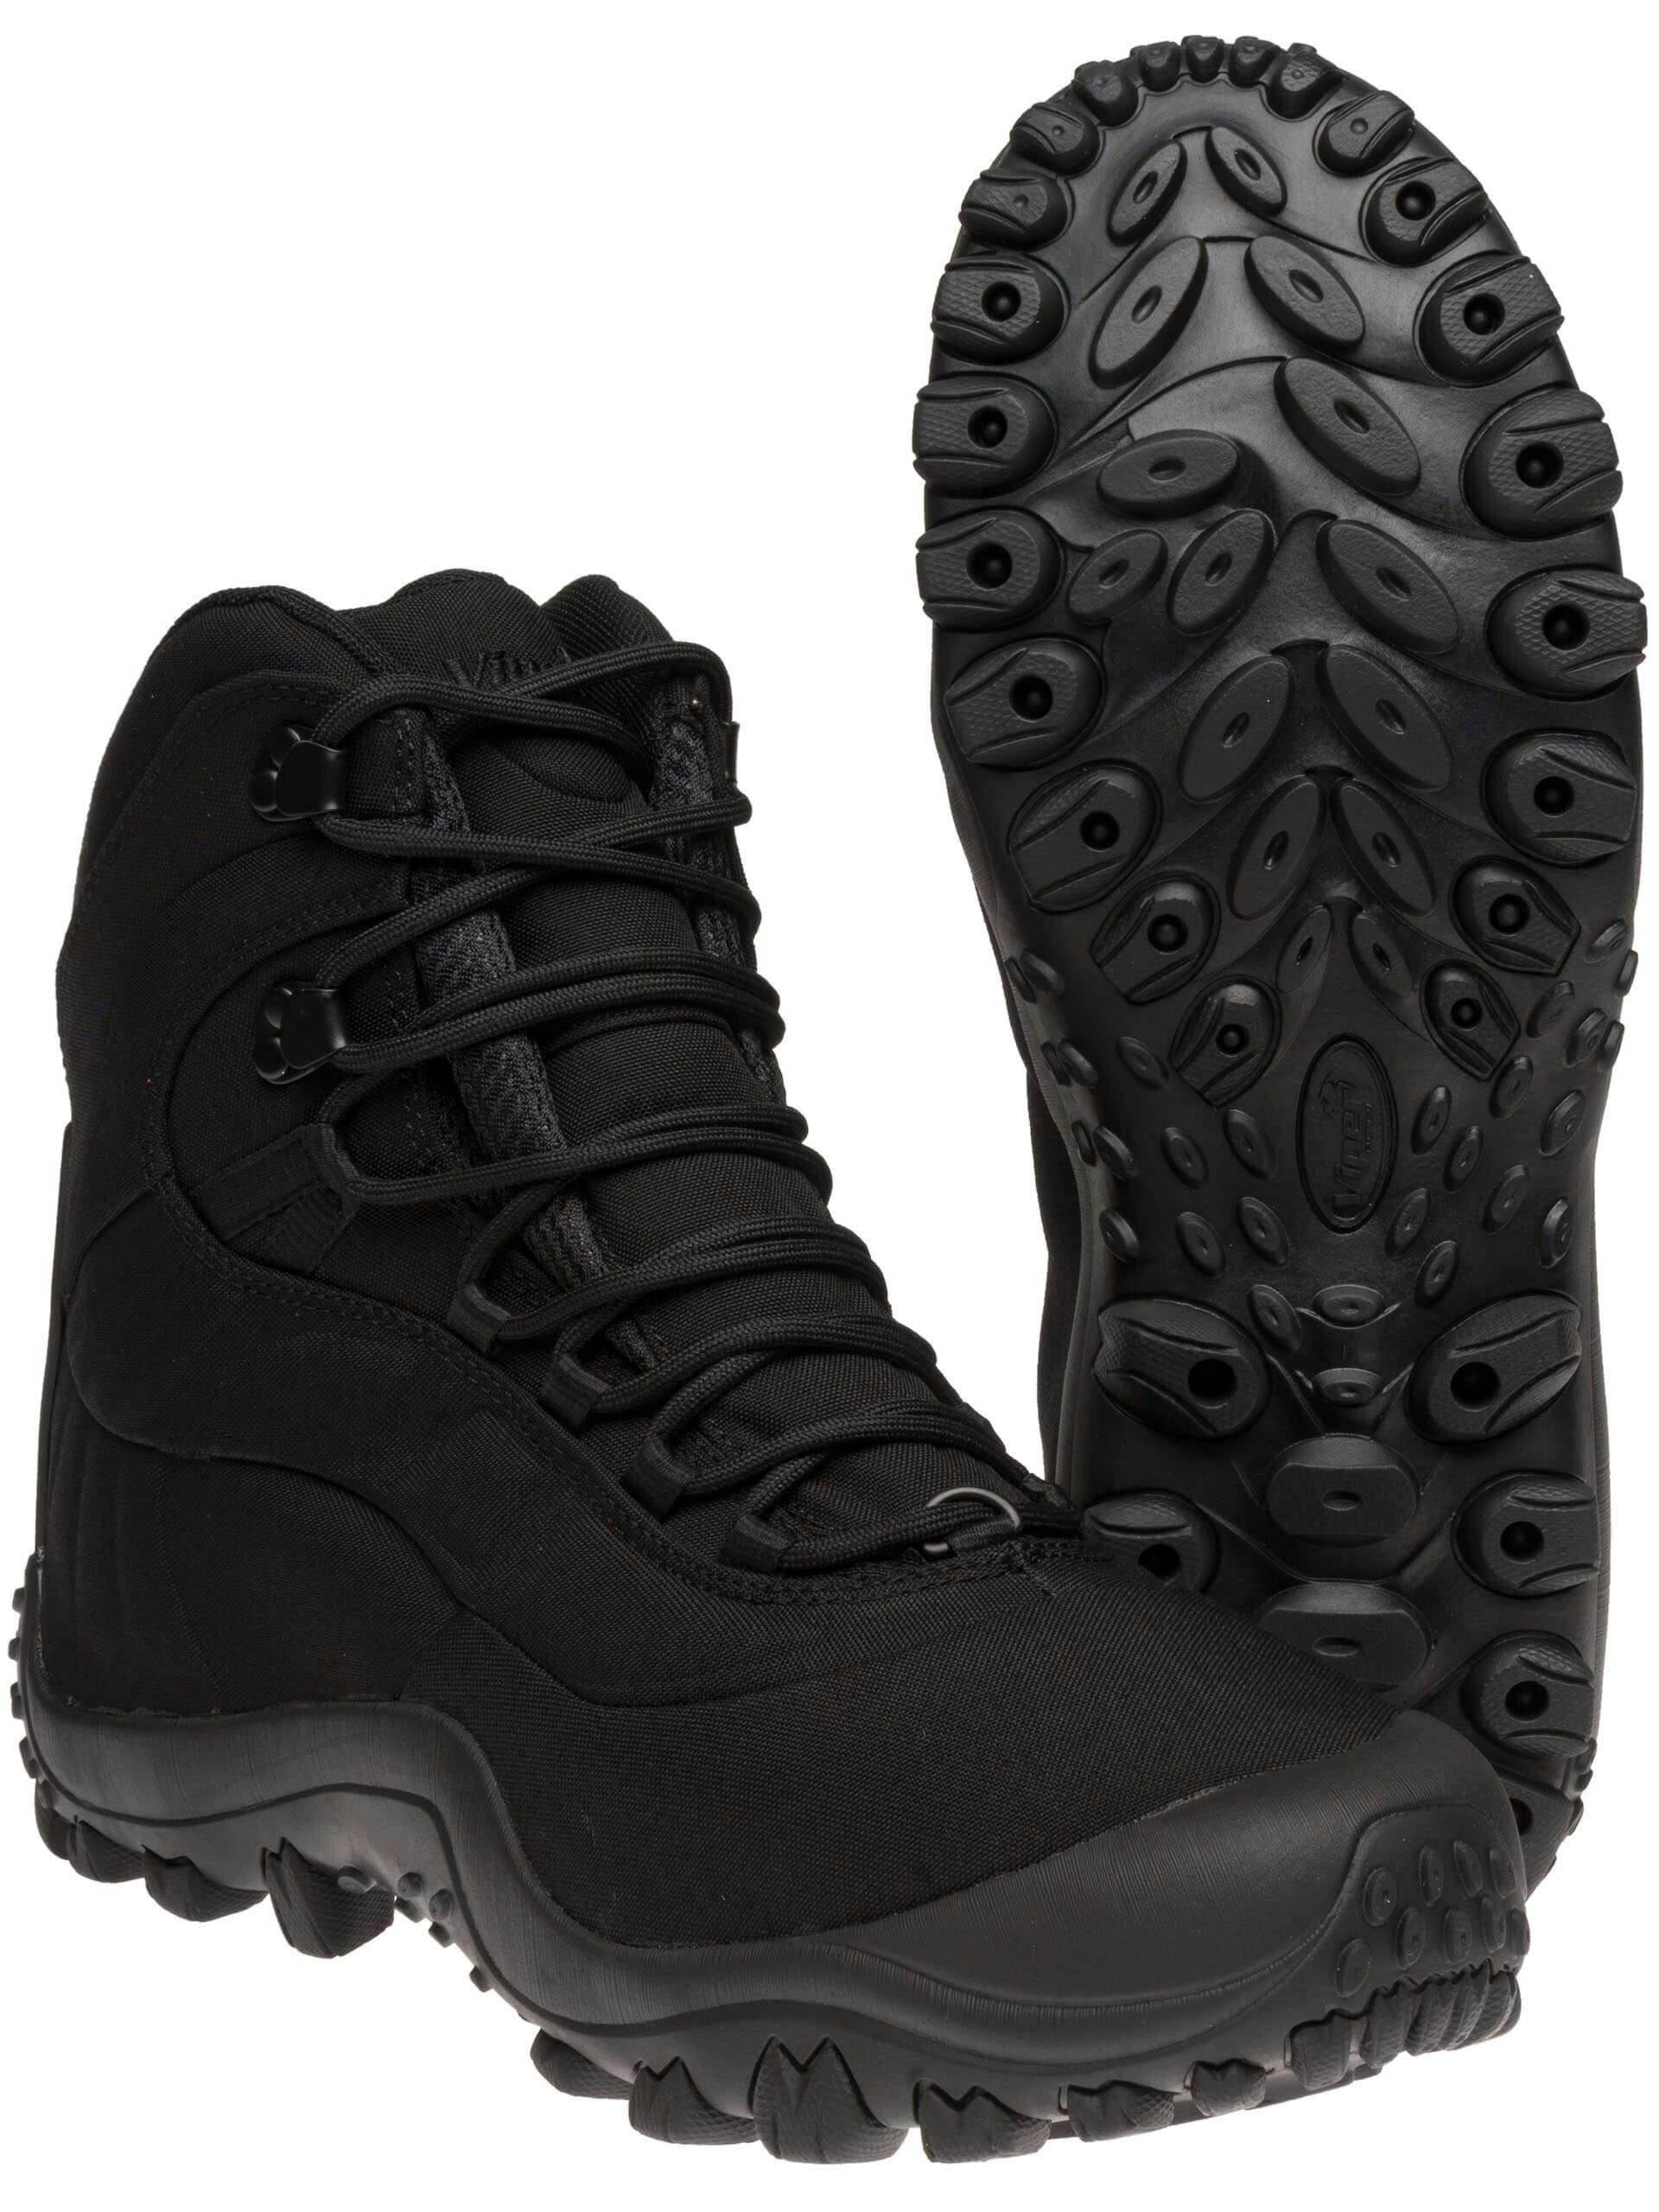 viper combat boots